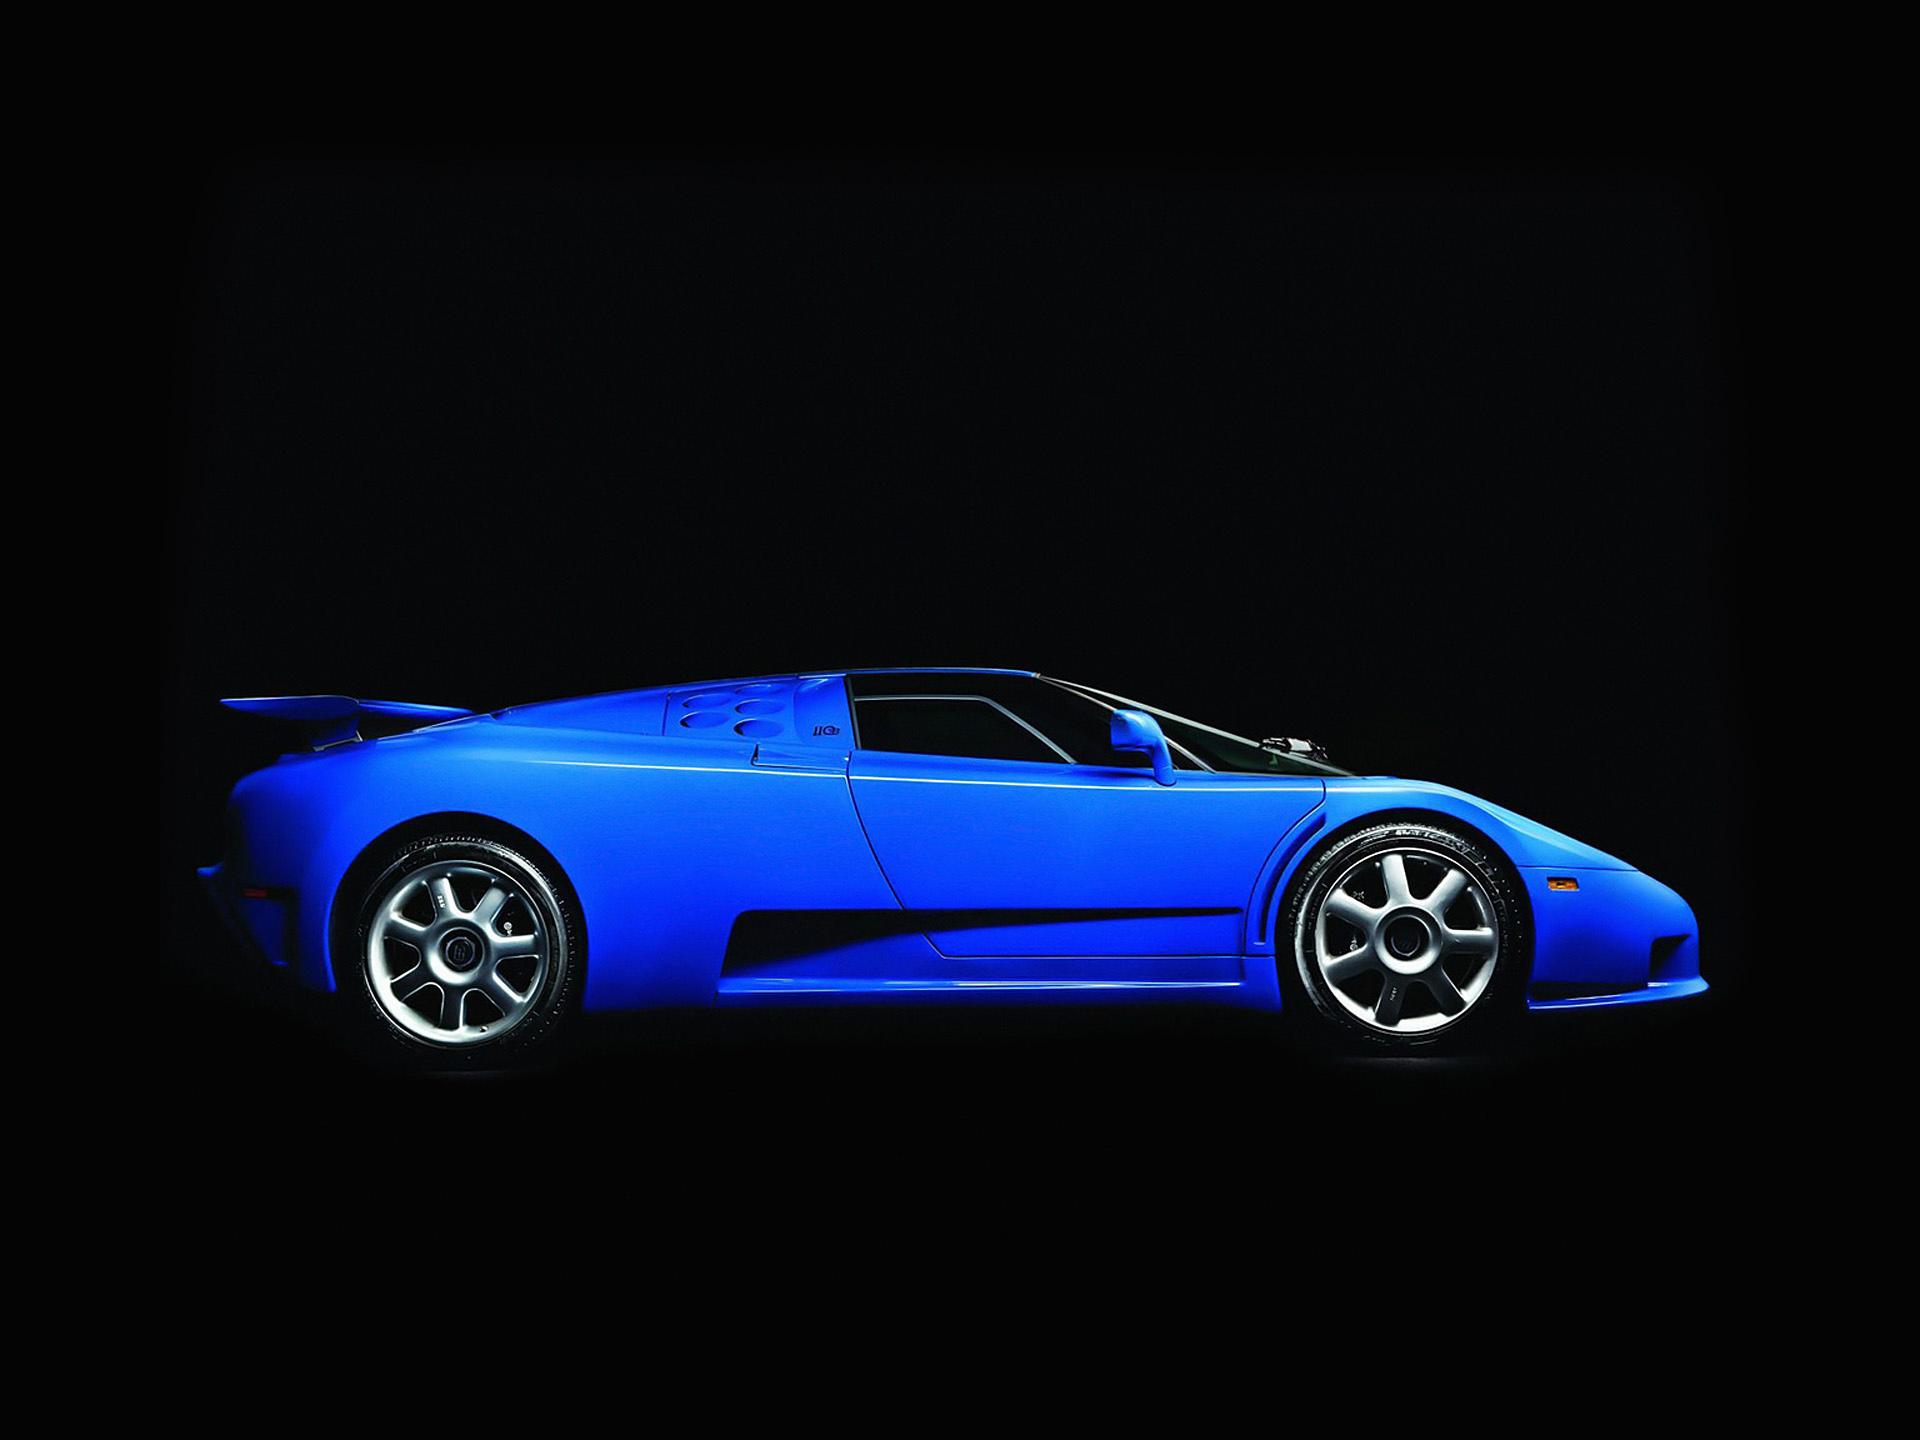 Bugatti EB110 GT at 1024 x 1024 iPad size wallpapers HD quality